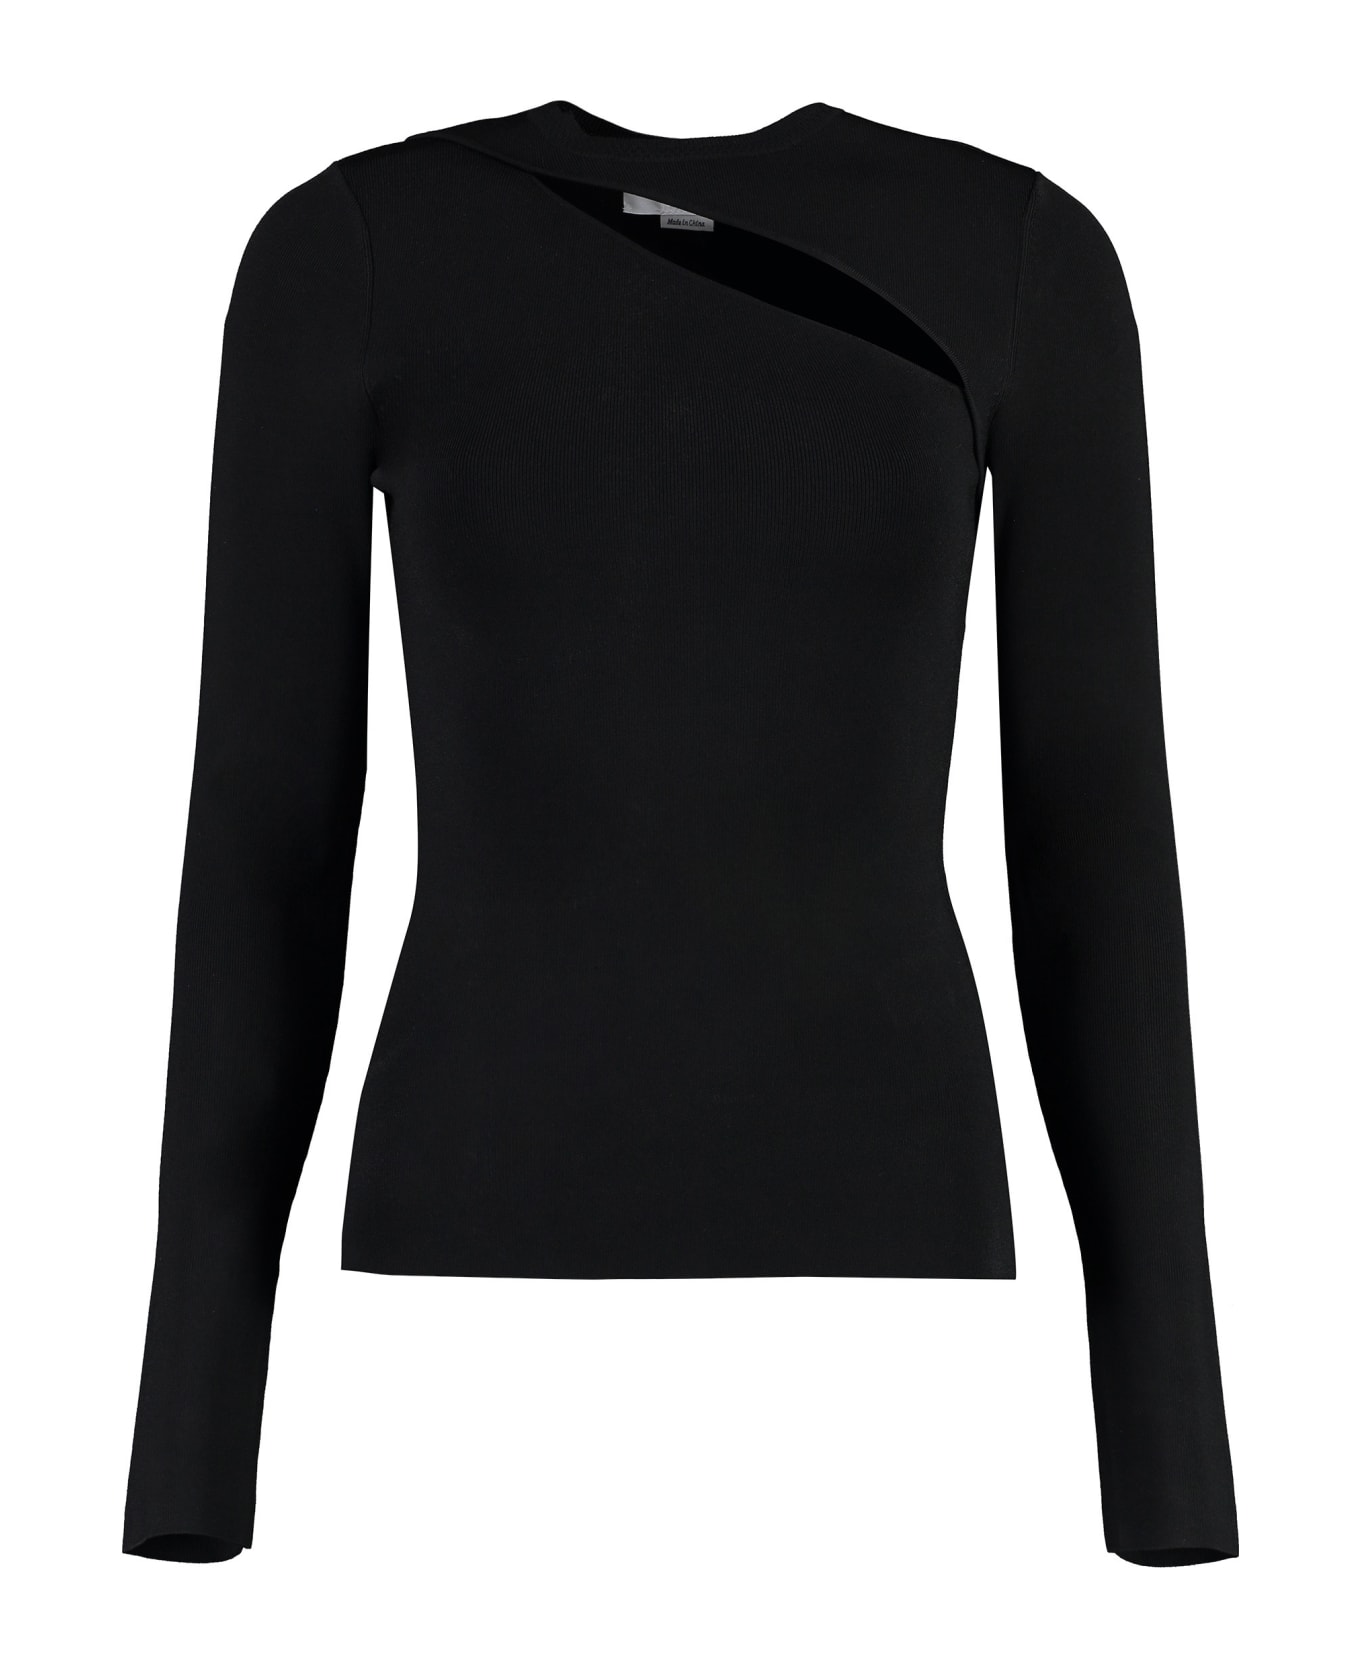 Victoria Beckham Knitted T-shirt - black